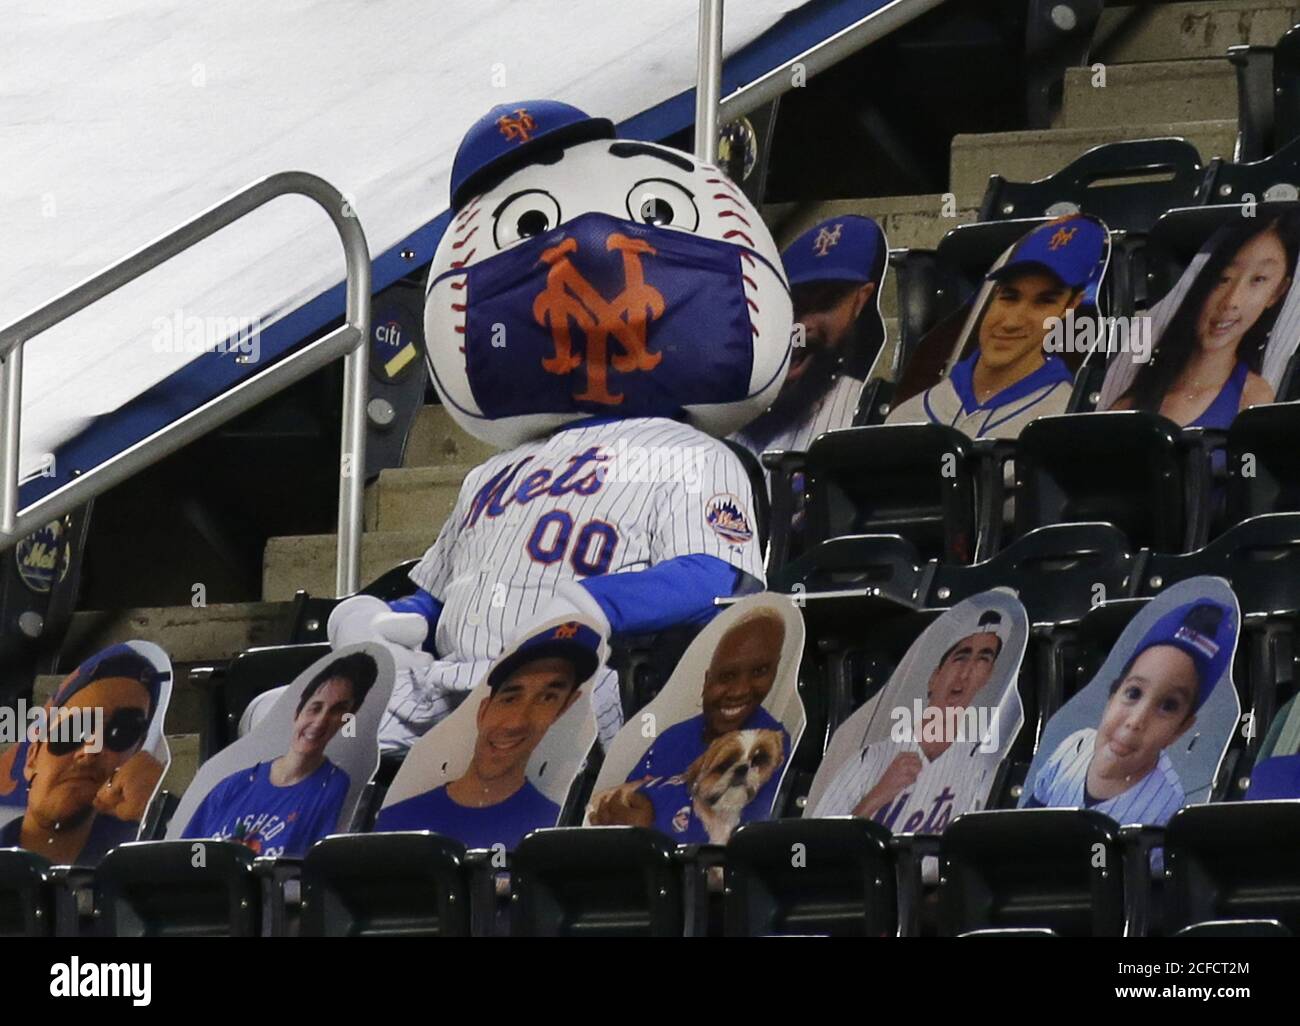 Queens, Stati Uniti. 04 settembre 2020. Met, la mascotte del team di New York Mets, indossa una maschera quando si siede sui sedili mentre i Mets giocano i Philadelphia Phillies al Citi Field venerdì 4 settembre 2020 a New York City. Foto di John Angelillo/UPI Credit: UPI/Alamy Live News Foto Stock